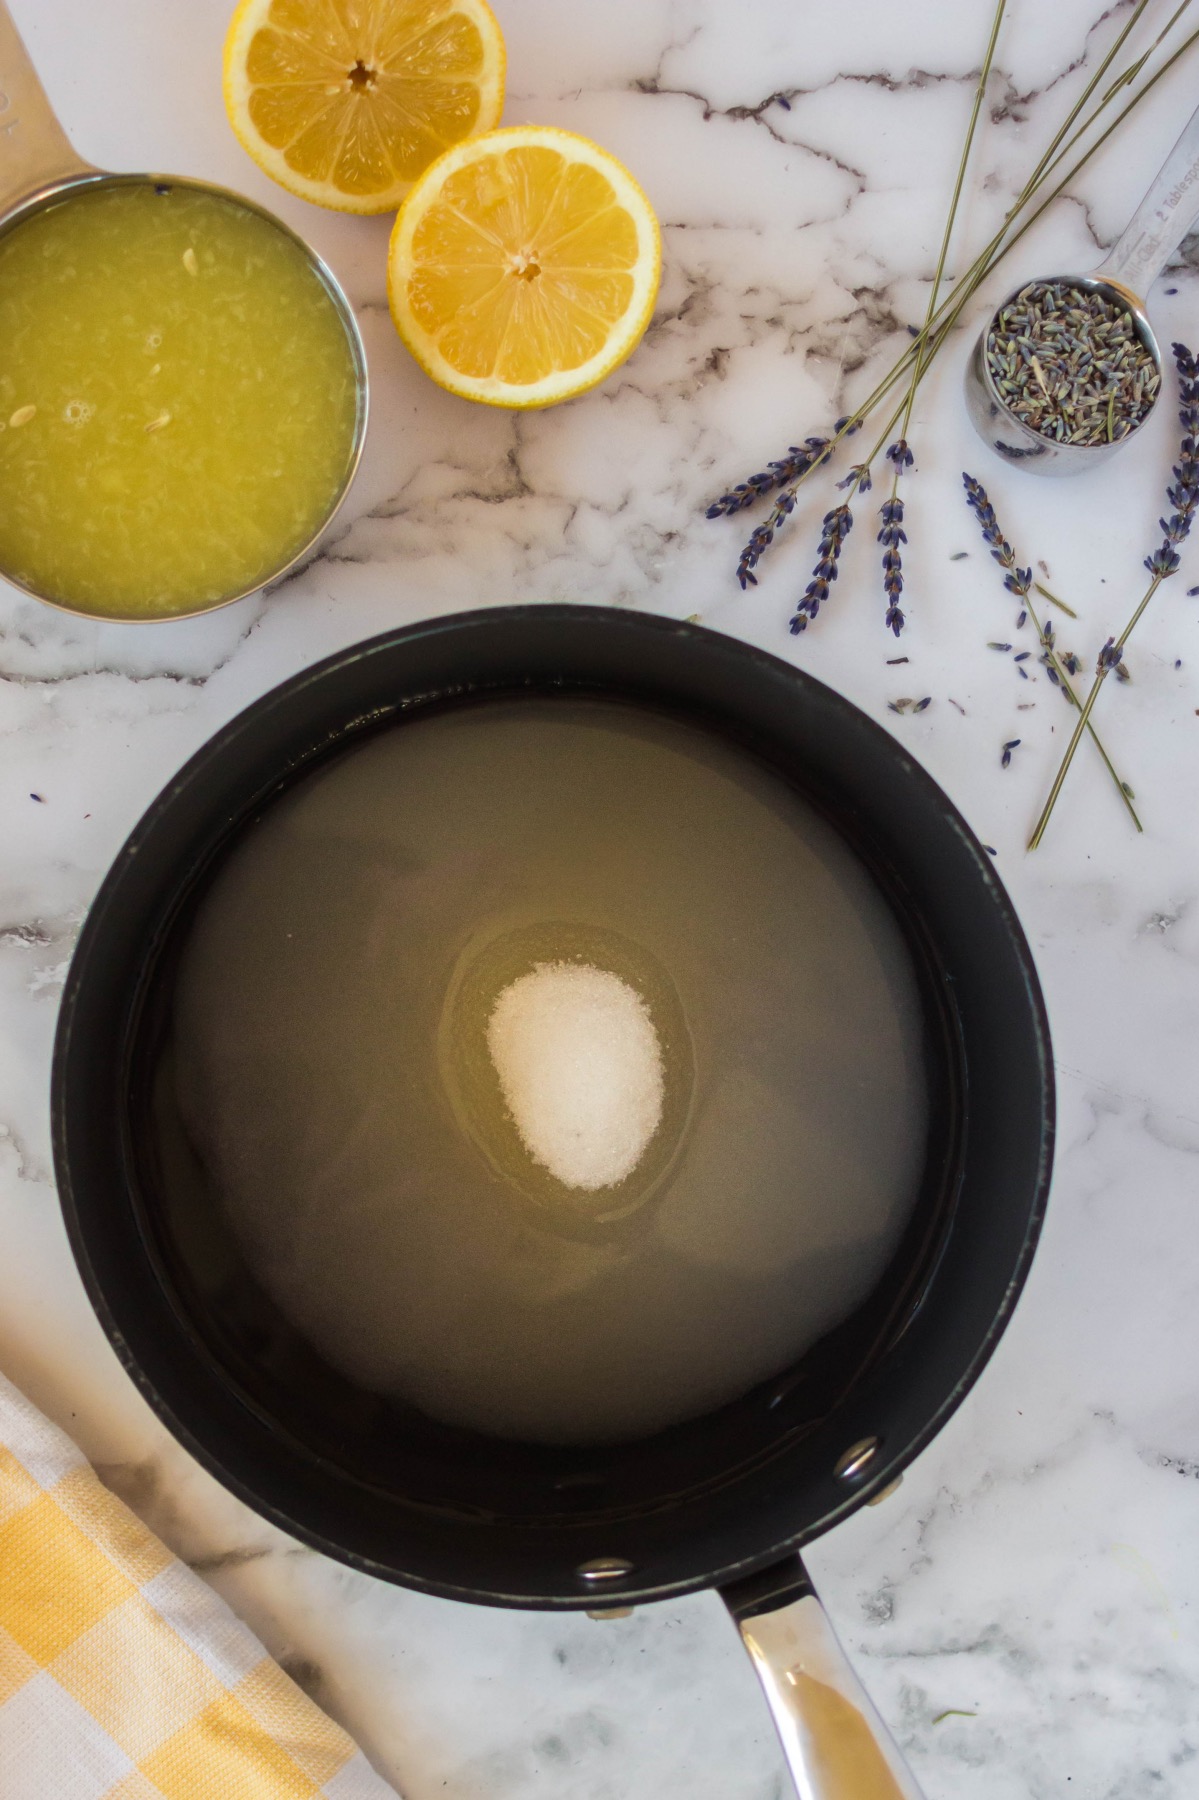 melt the sugar to make homemade lavender lemonade recipe